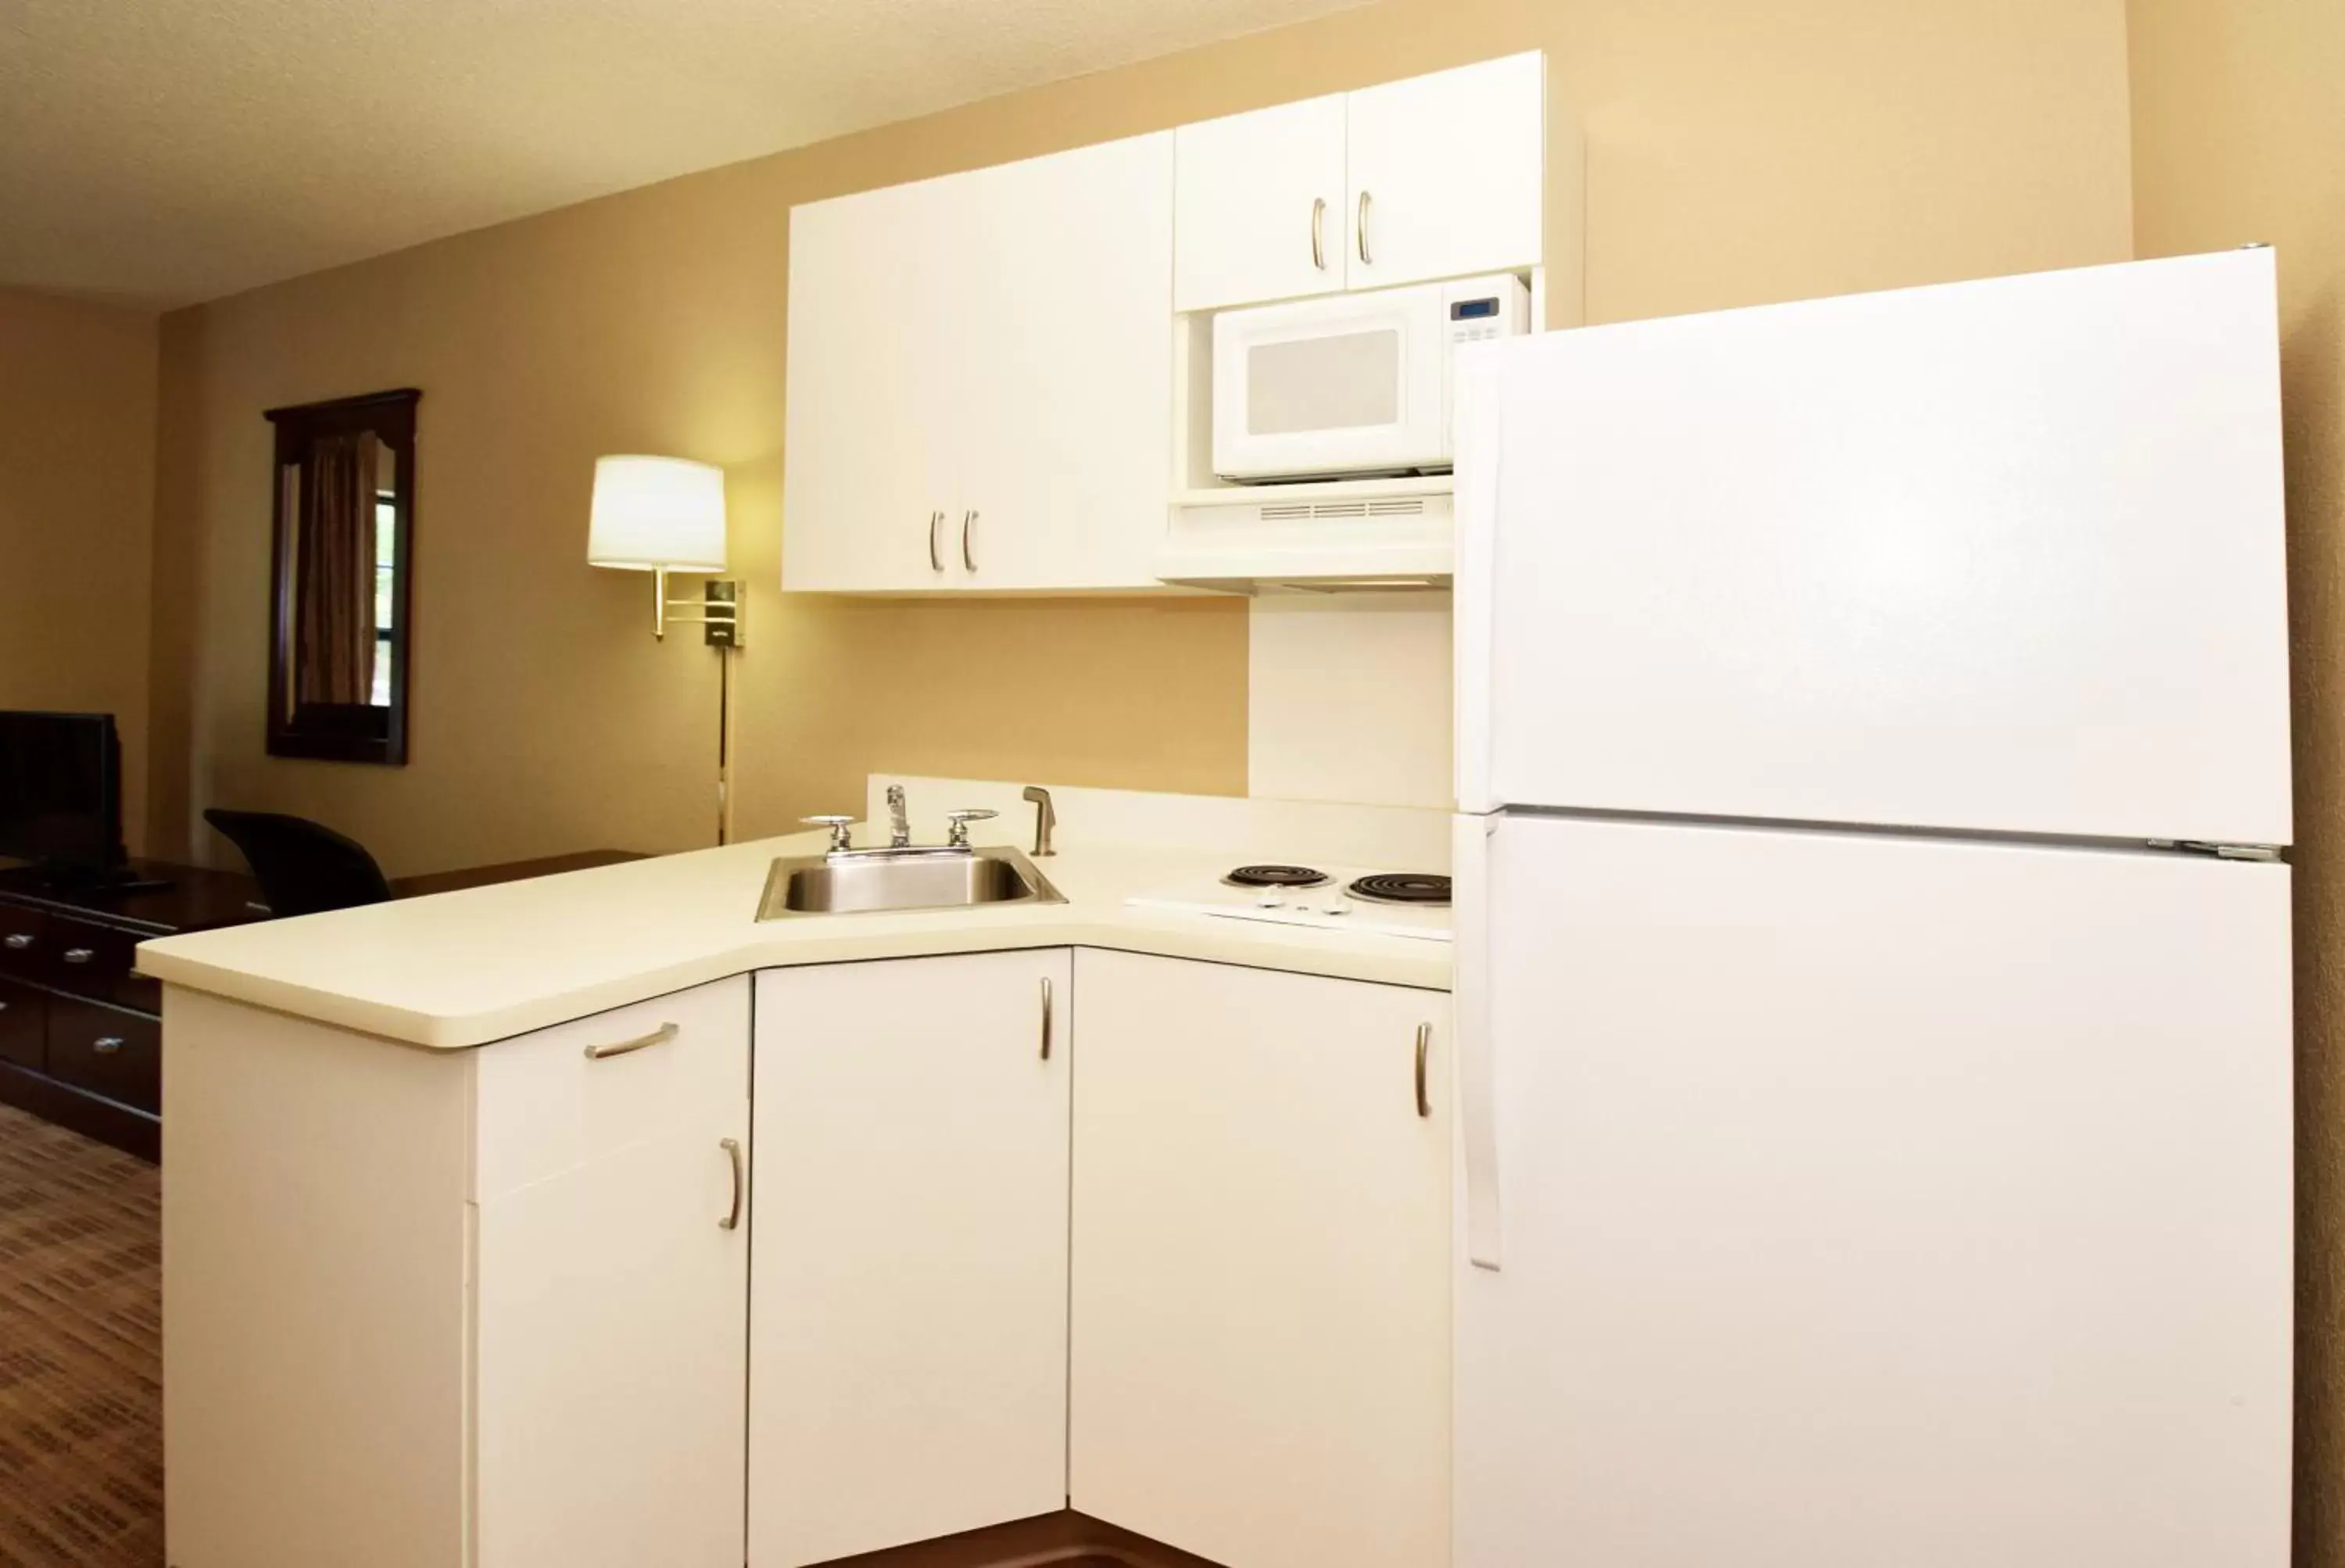 Kitchen or kitchenette, Kitchen/Kitchenette in Extended Stay America Suites - Phoenix - Deer Valley